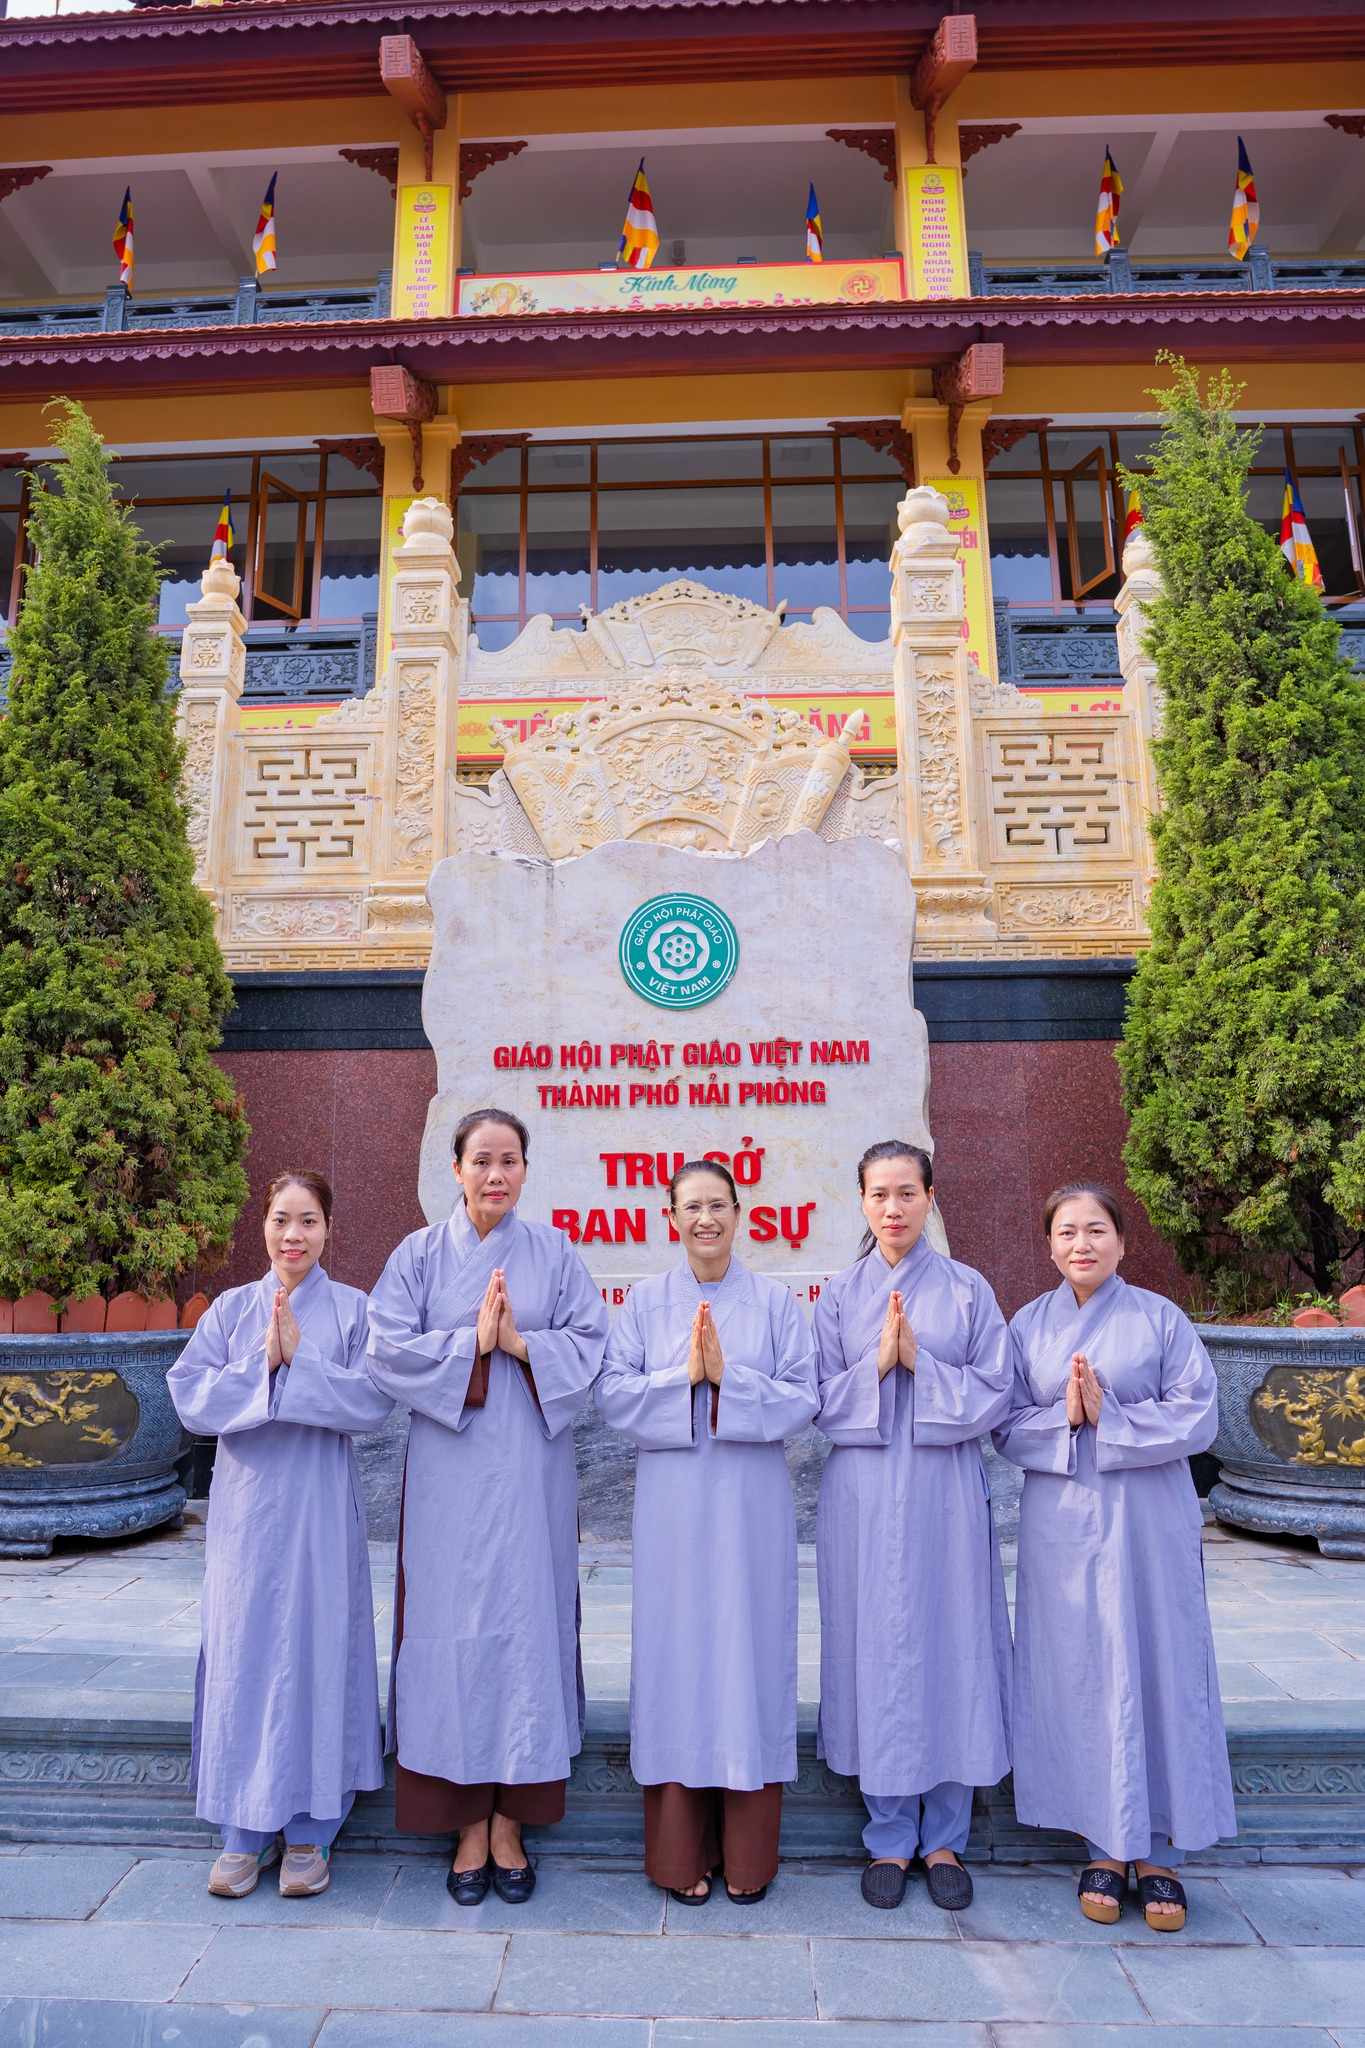 Khoảnh khắc ý nghĩa của các Phật tử bên Cô chủ nhiệm trong chuyến đi cúng dường mùa an cư tại Hạ trường chùa Nam Hải (Quận Lê Chân, TP. Hải Phòng)